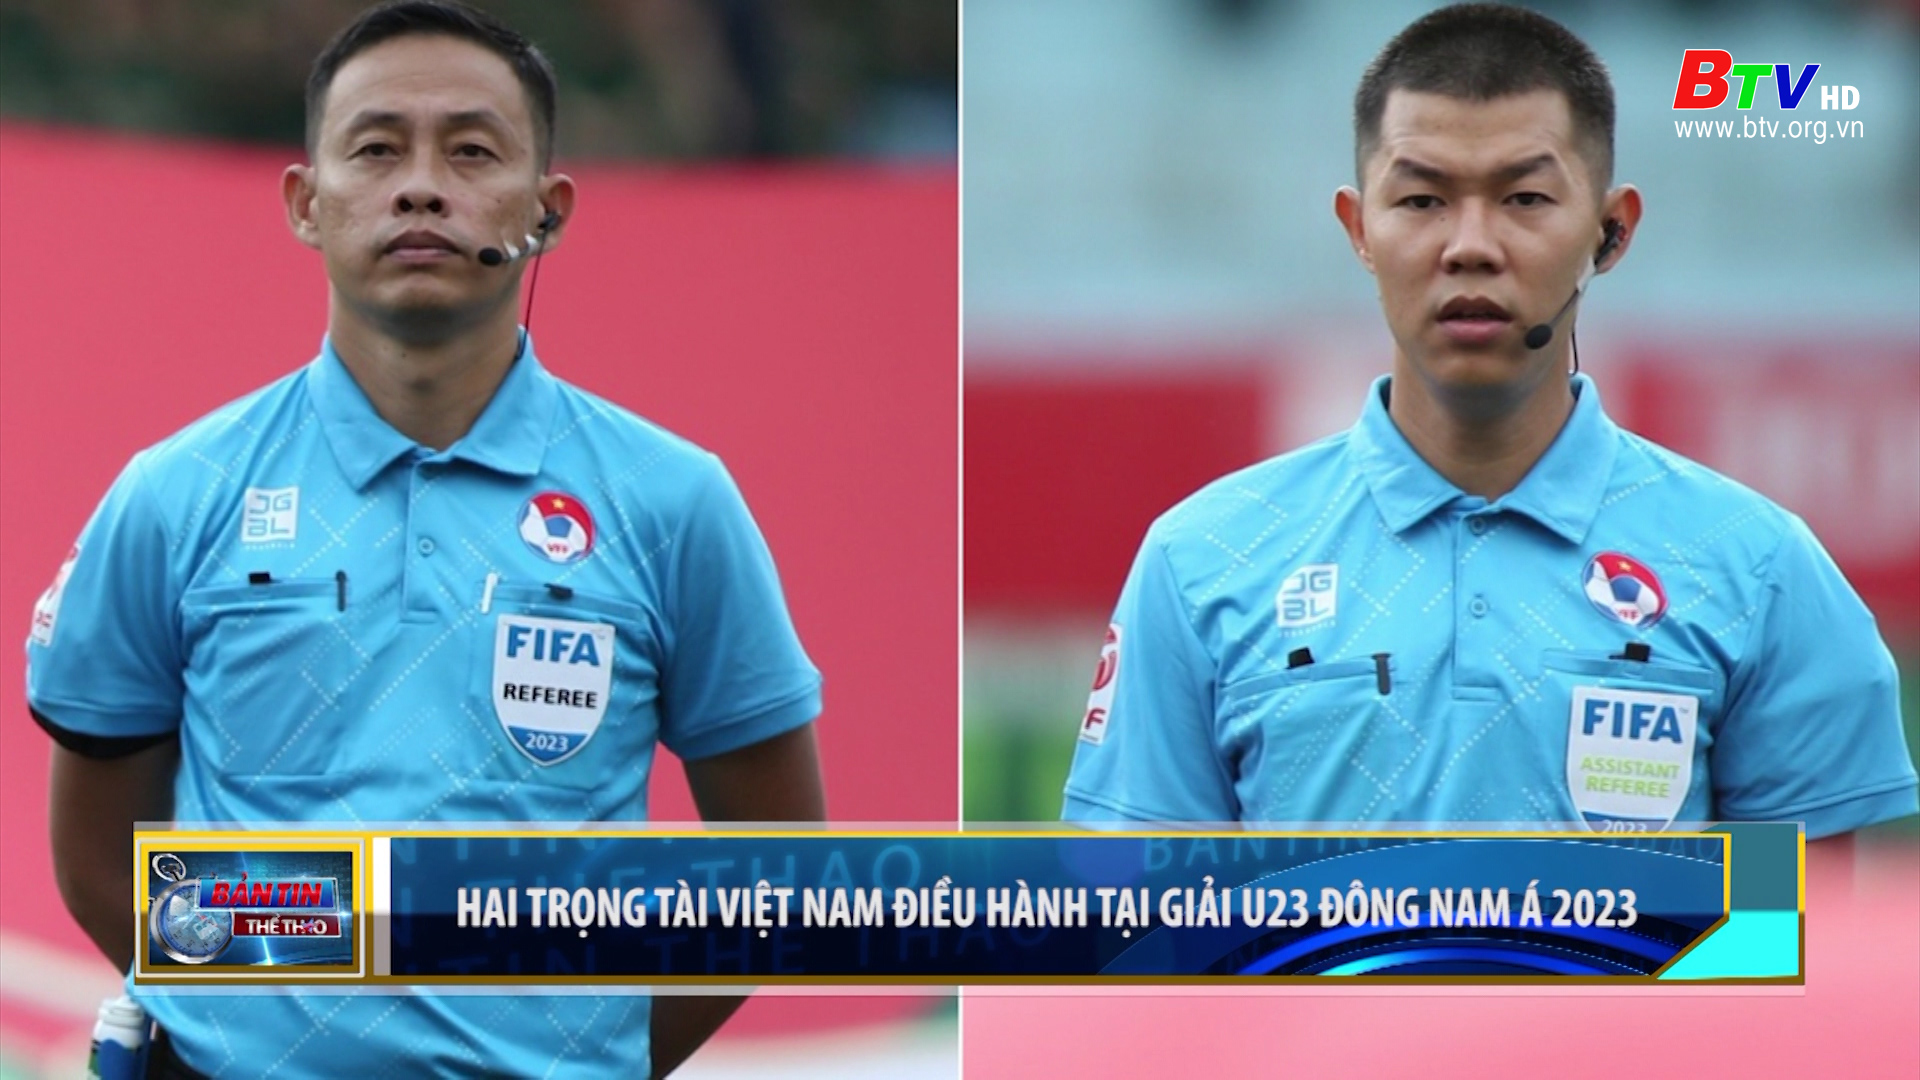 Hai trọng tài Việt Nam điều hành tại giải U23 Đông Nam Á 2023